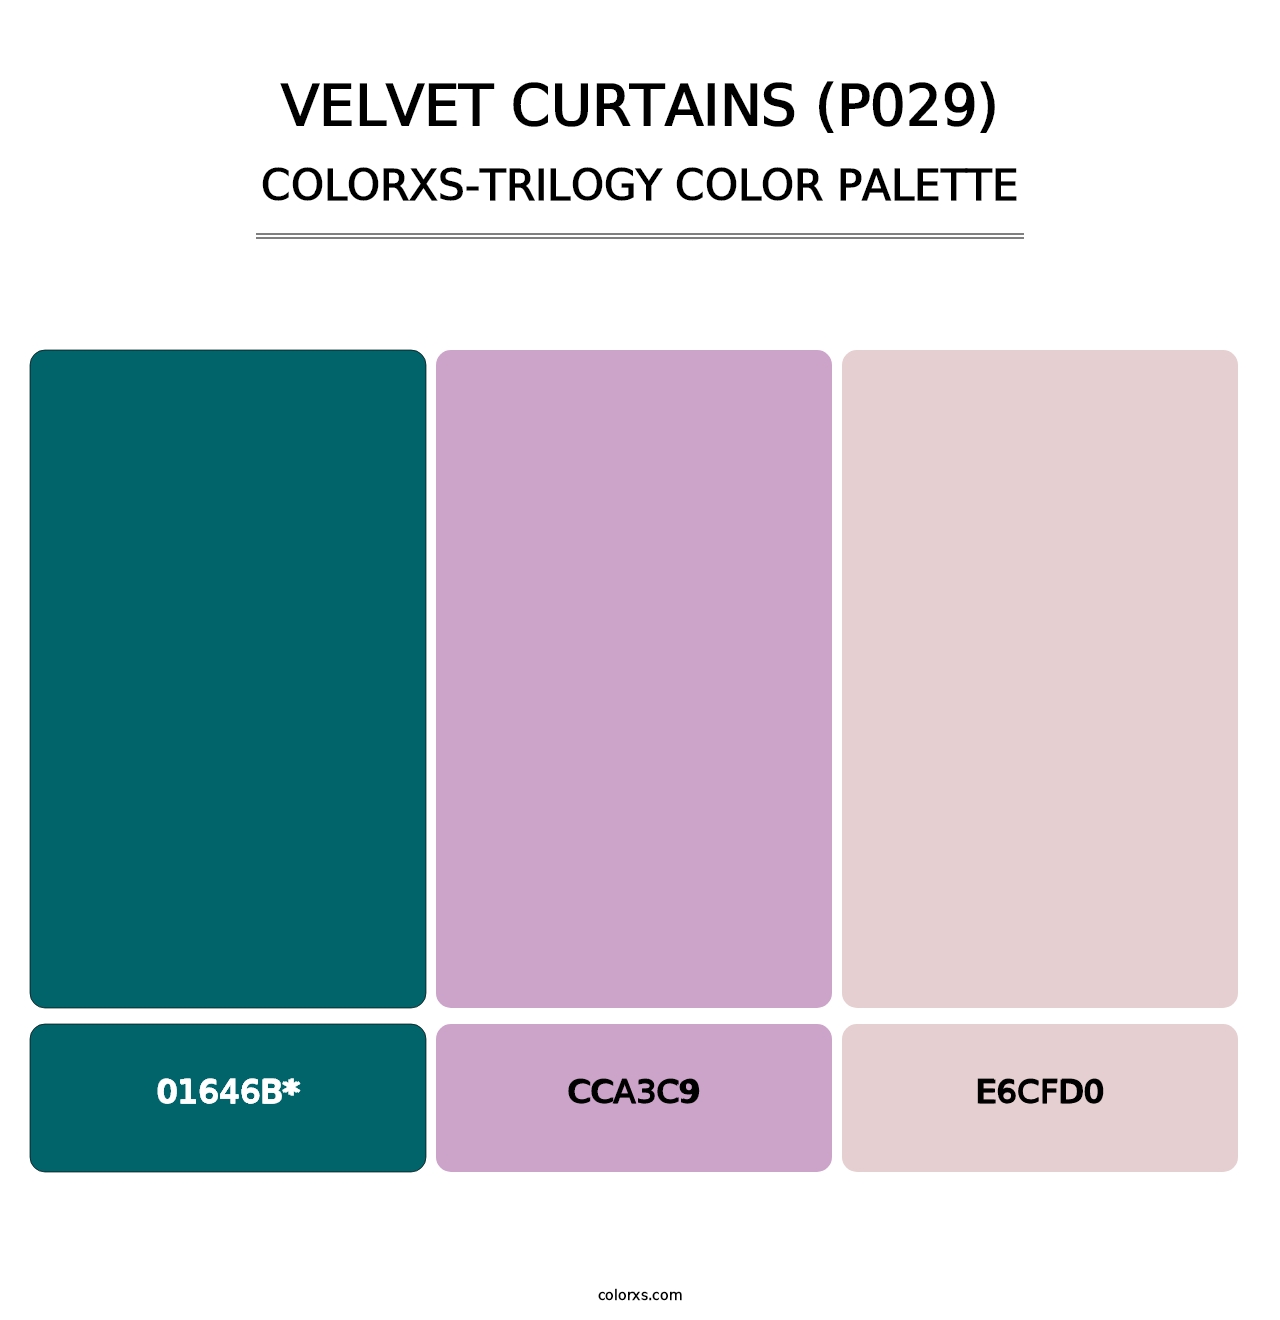 Velvet Curtains (P029) - Colorxs Trilogy Palette